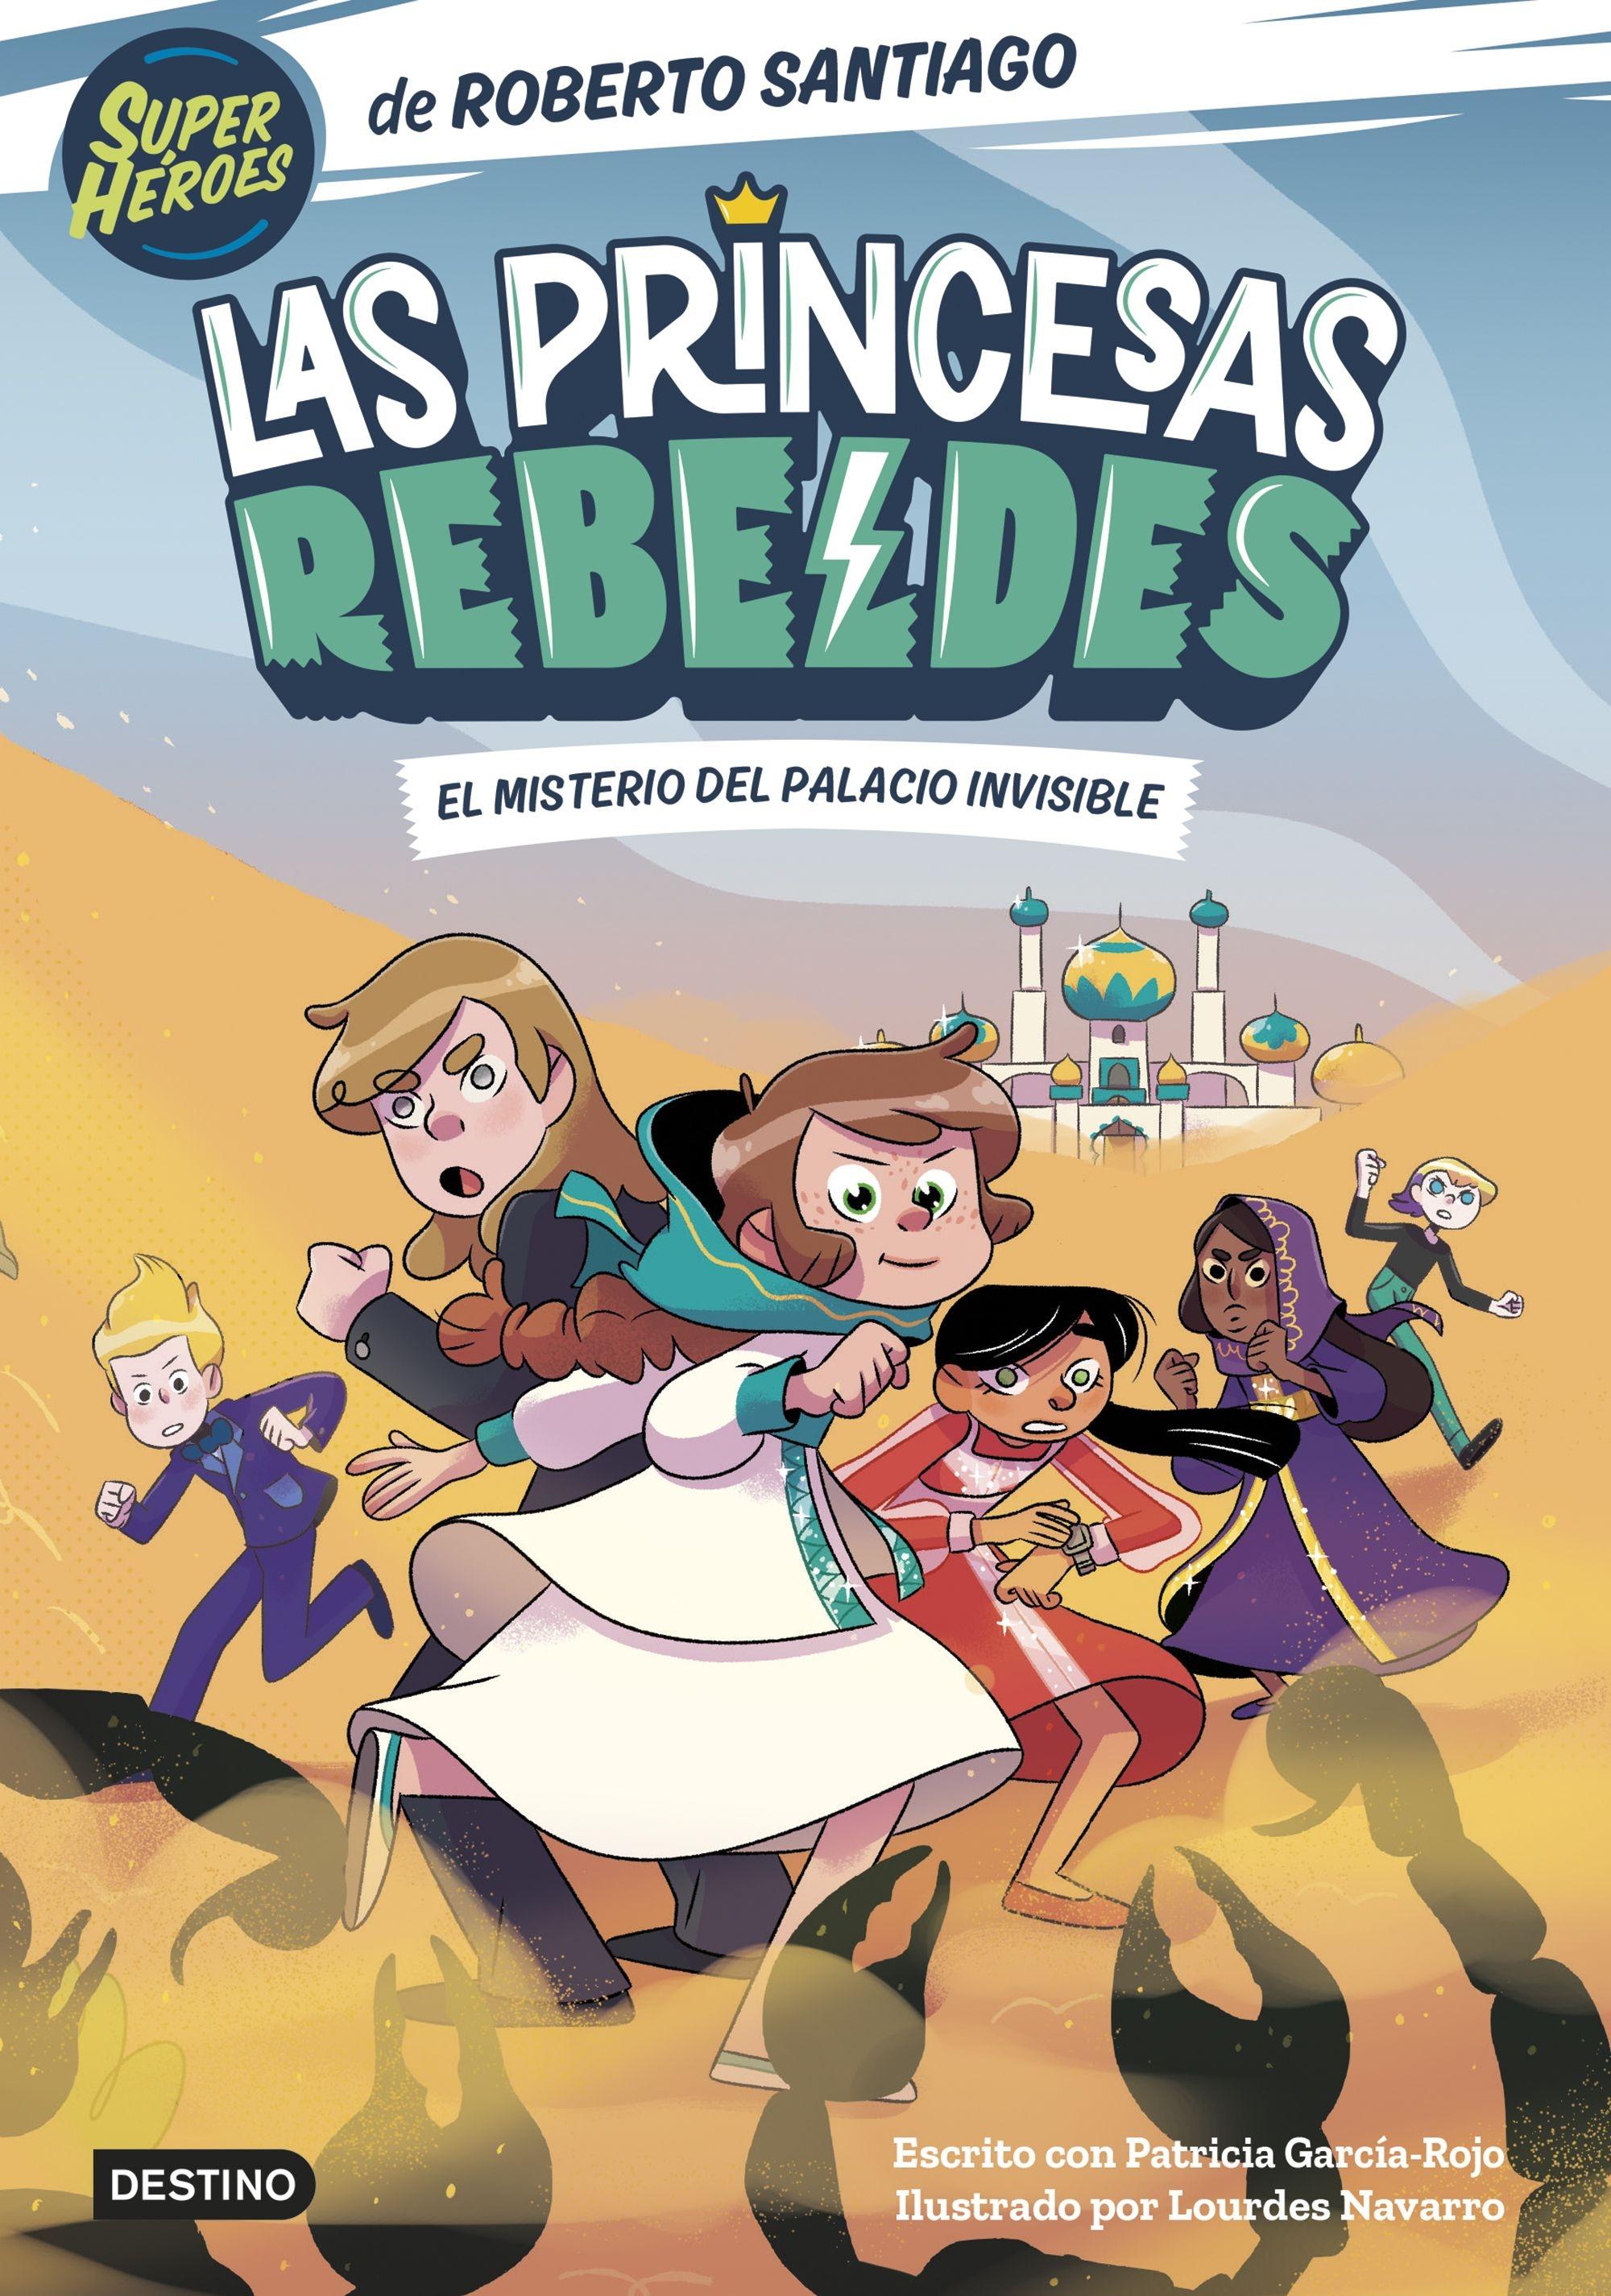 Las Princesas Rebeldes 2 "El misterio del palacio invisible". 